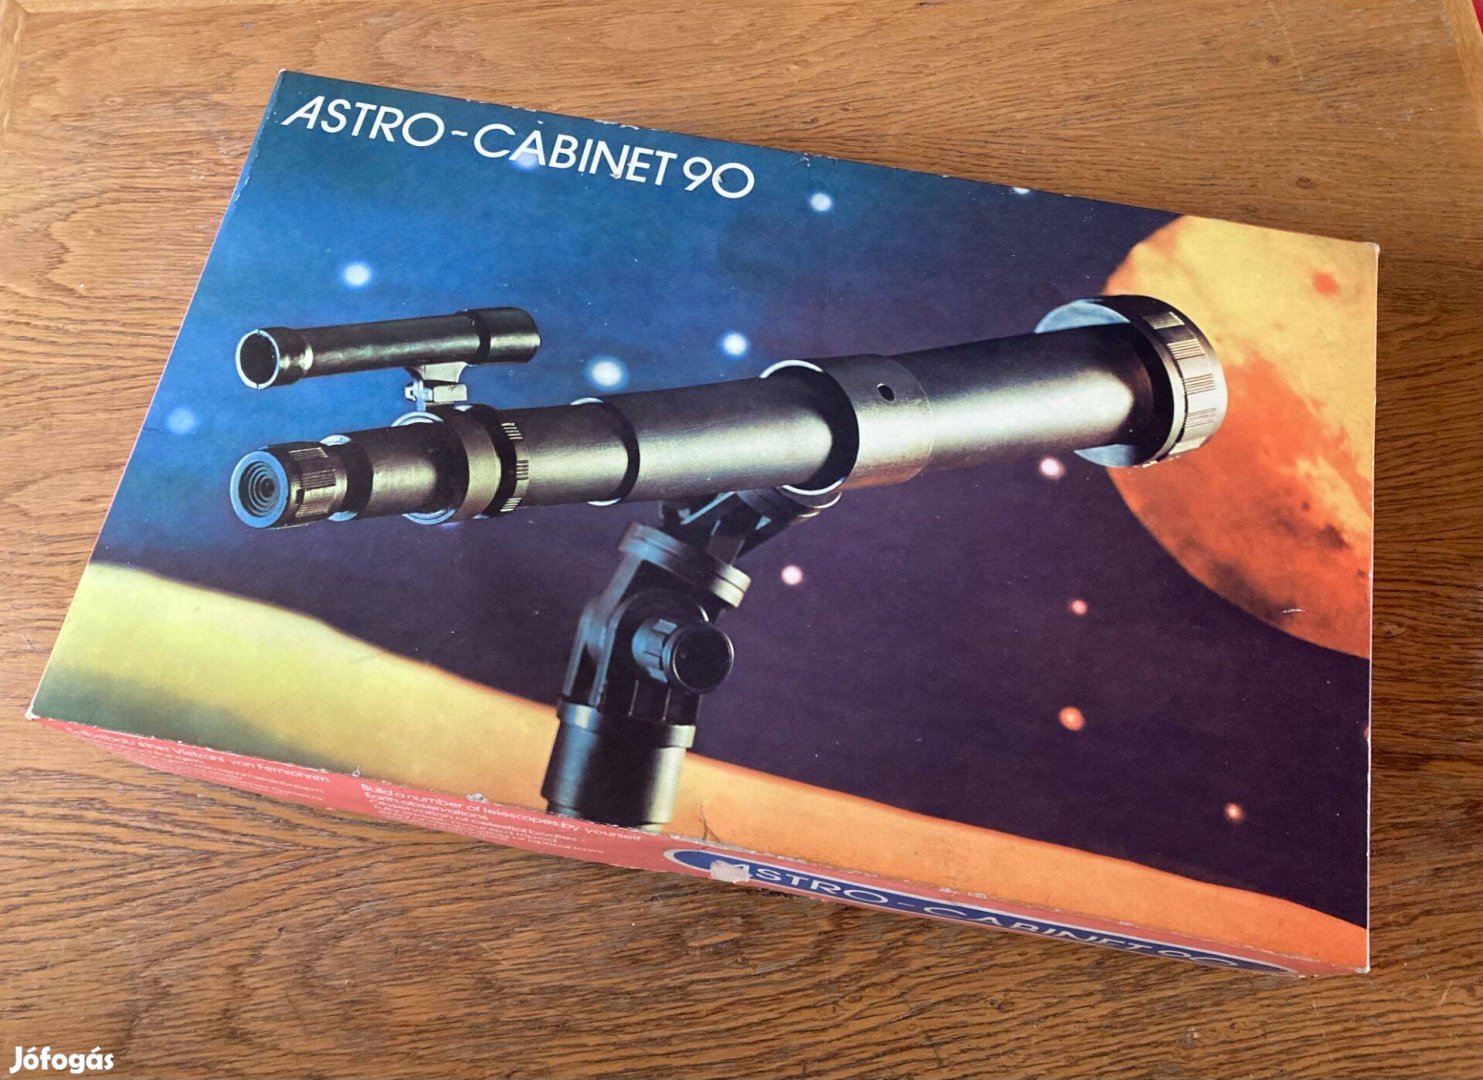 Retró ajándék ötlet! Astro-Cabinet 90 távcső a régi gyerekszobából